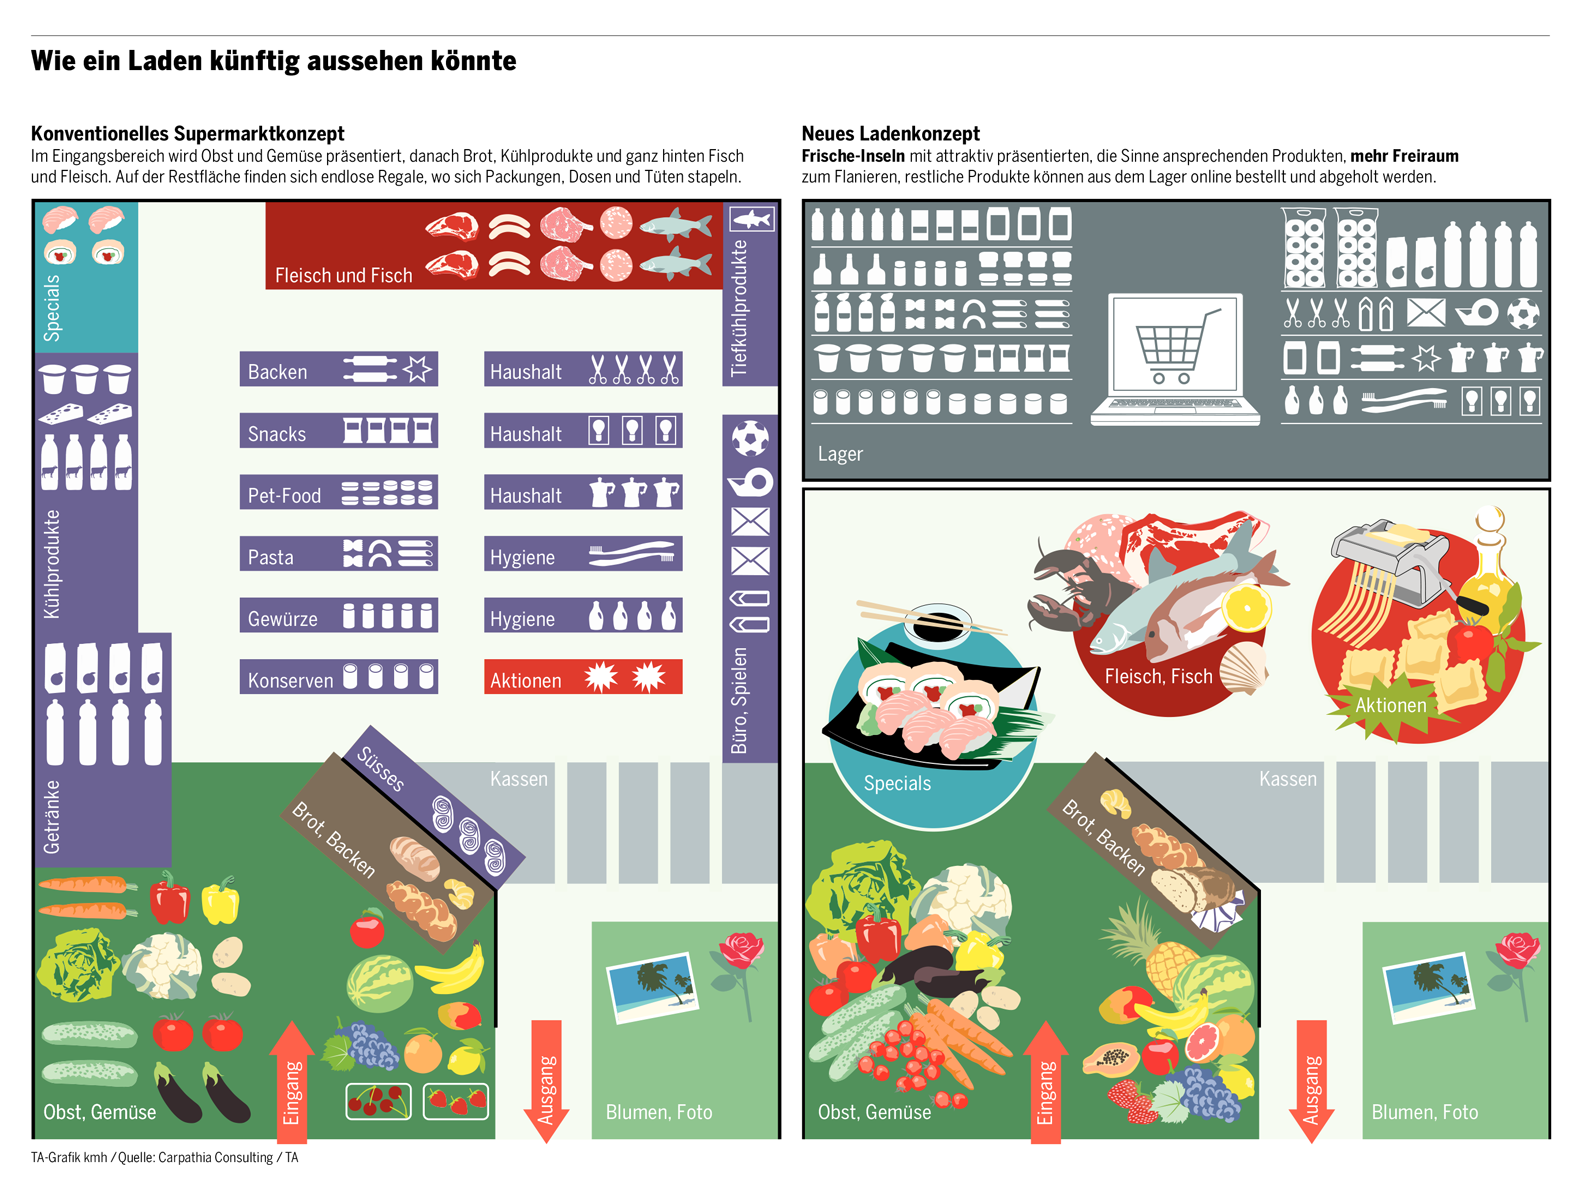 Supermarkt Vision 2020 - Wie ein Laden künftig aussehen könnte / Vision: Carpathia - Grafik: Tages-Anzeiger